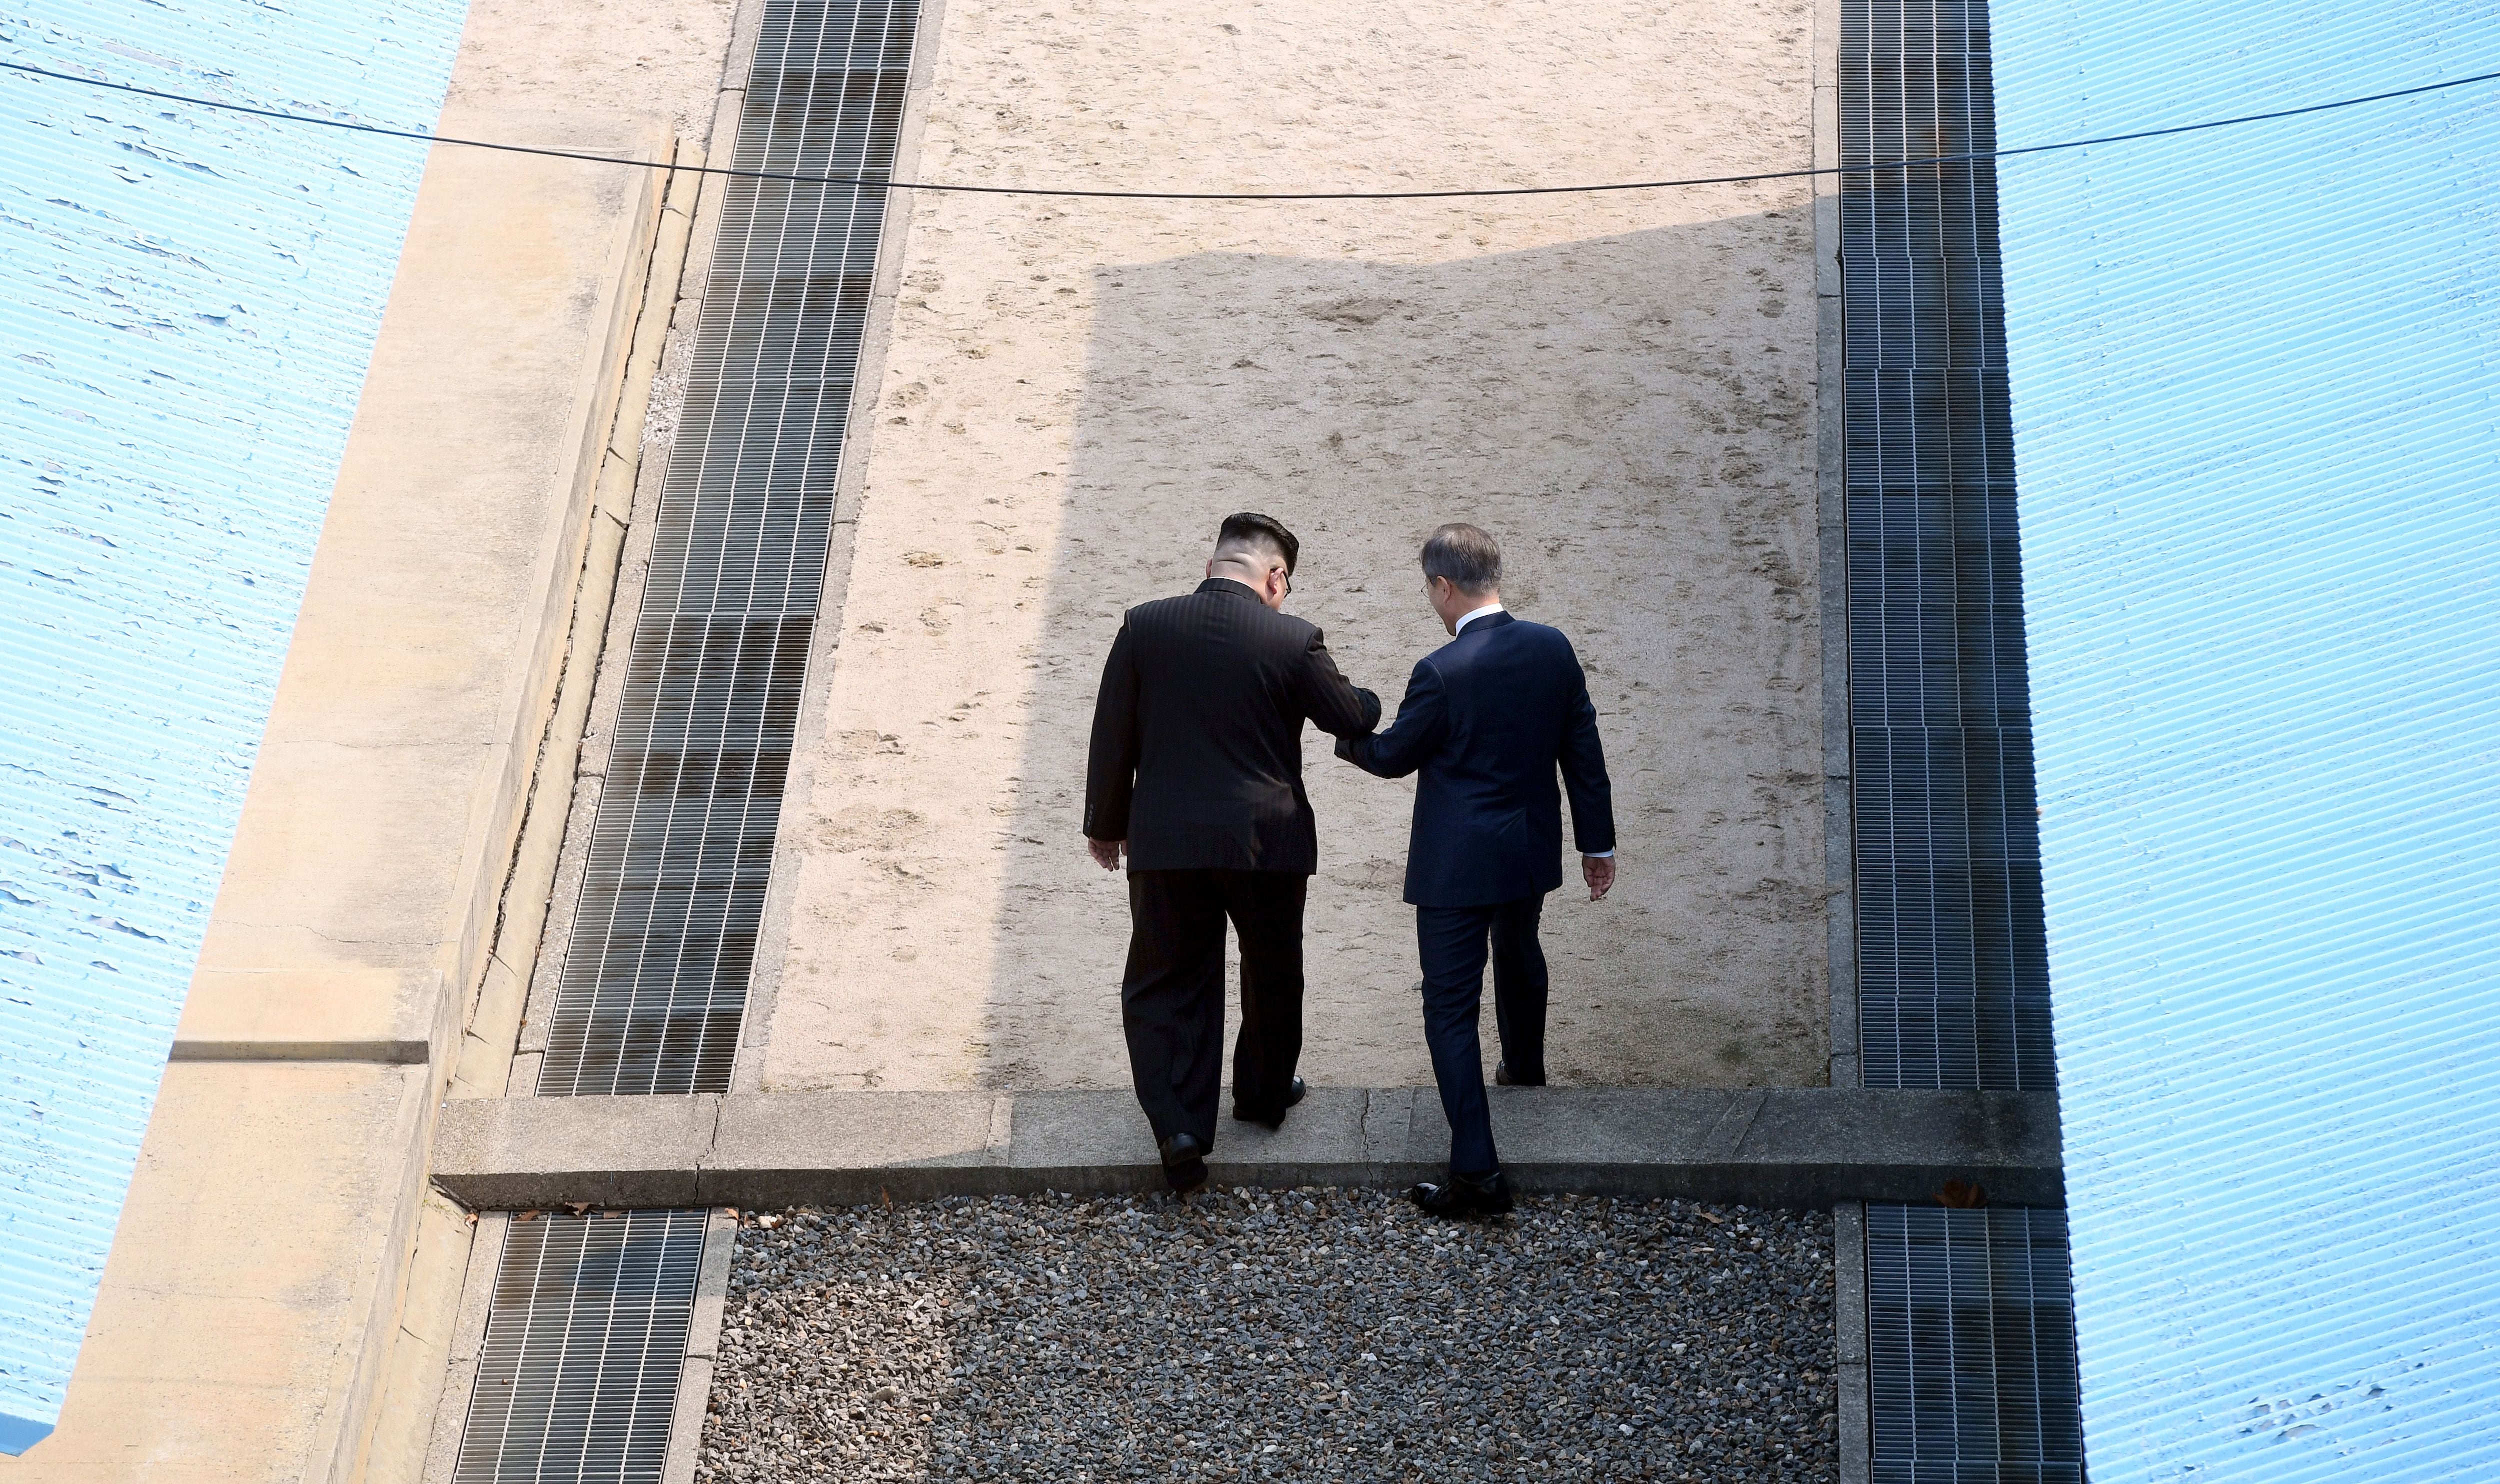 2018년 4월 당시 문재인 대통령이 북한 김정은 손을 잡고 판문점에서 군사분계선을 넘고 있다. 둘은 여기서 종전 선언 추진 등 일명 한반도 평화 프로세스 방안을 논의했다고 한다. /한국공동사진기자